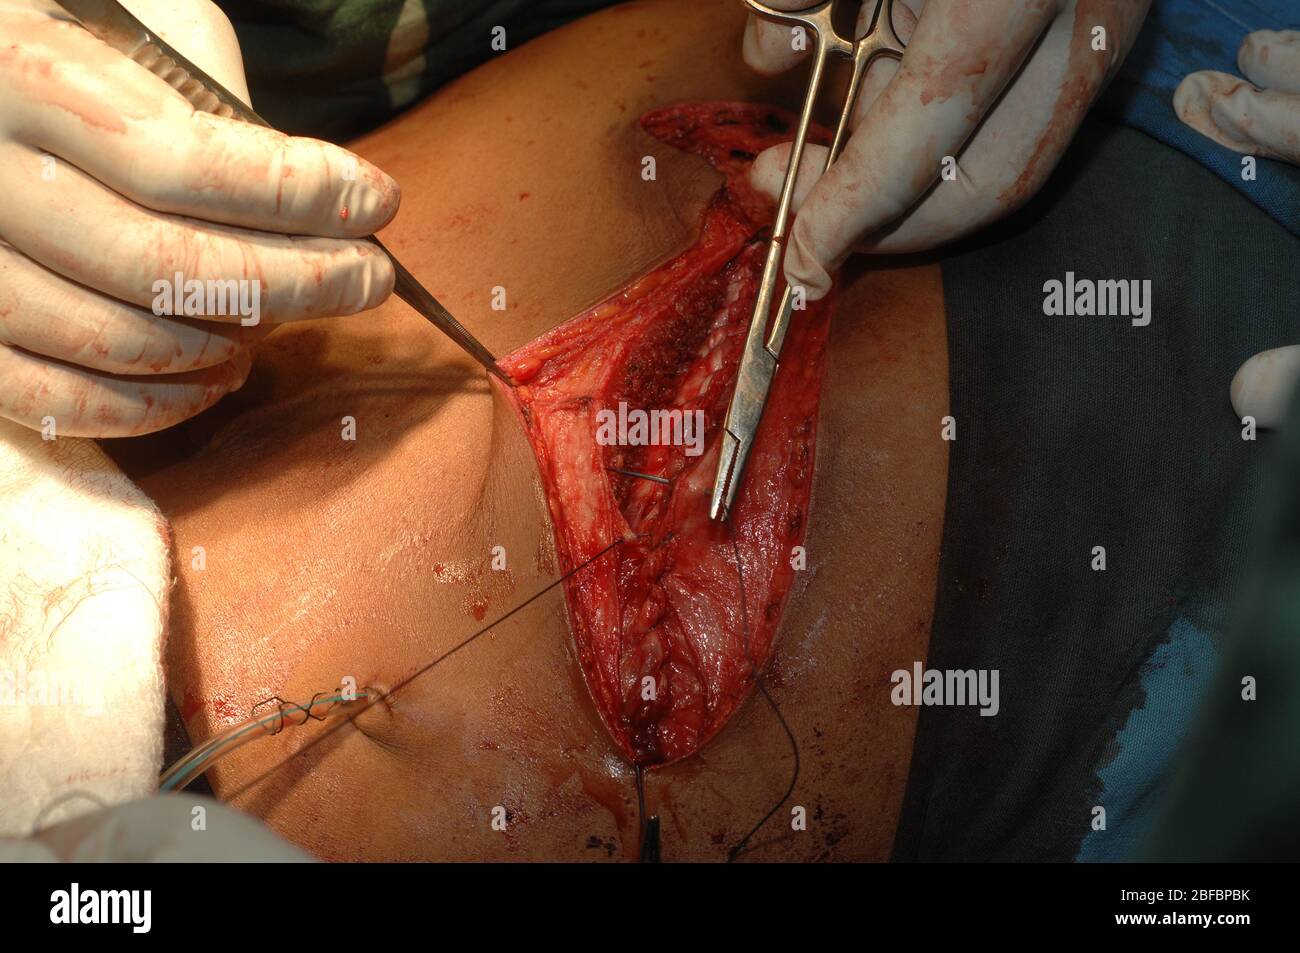 Les chirurgiens ont surclassé la zone abdominale d'un patient après une splénectomie. Banque D'Images